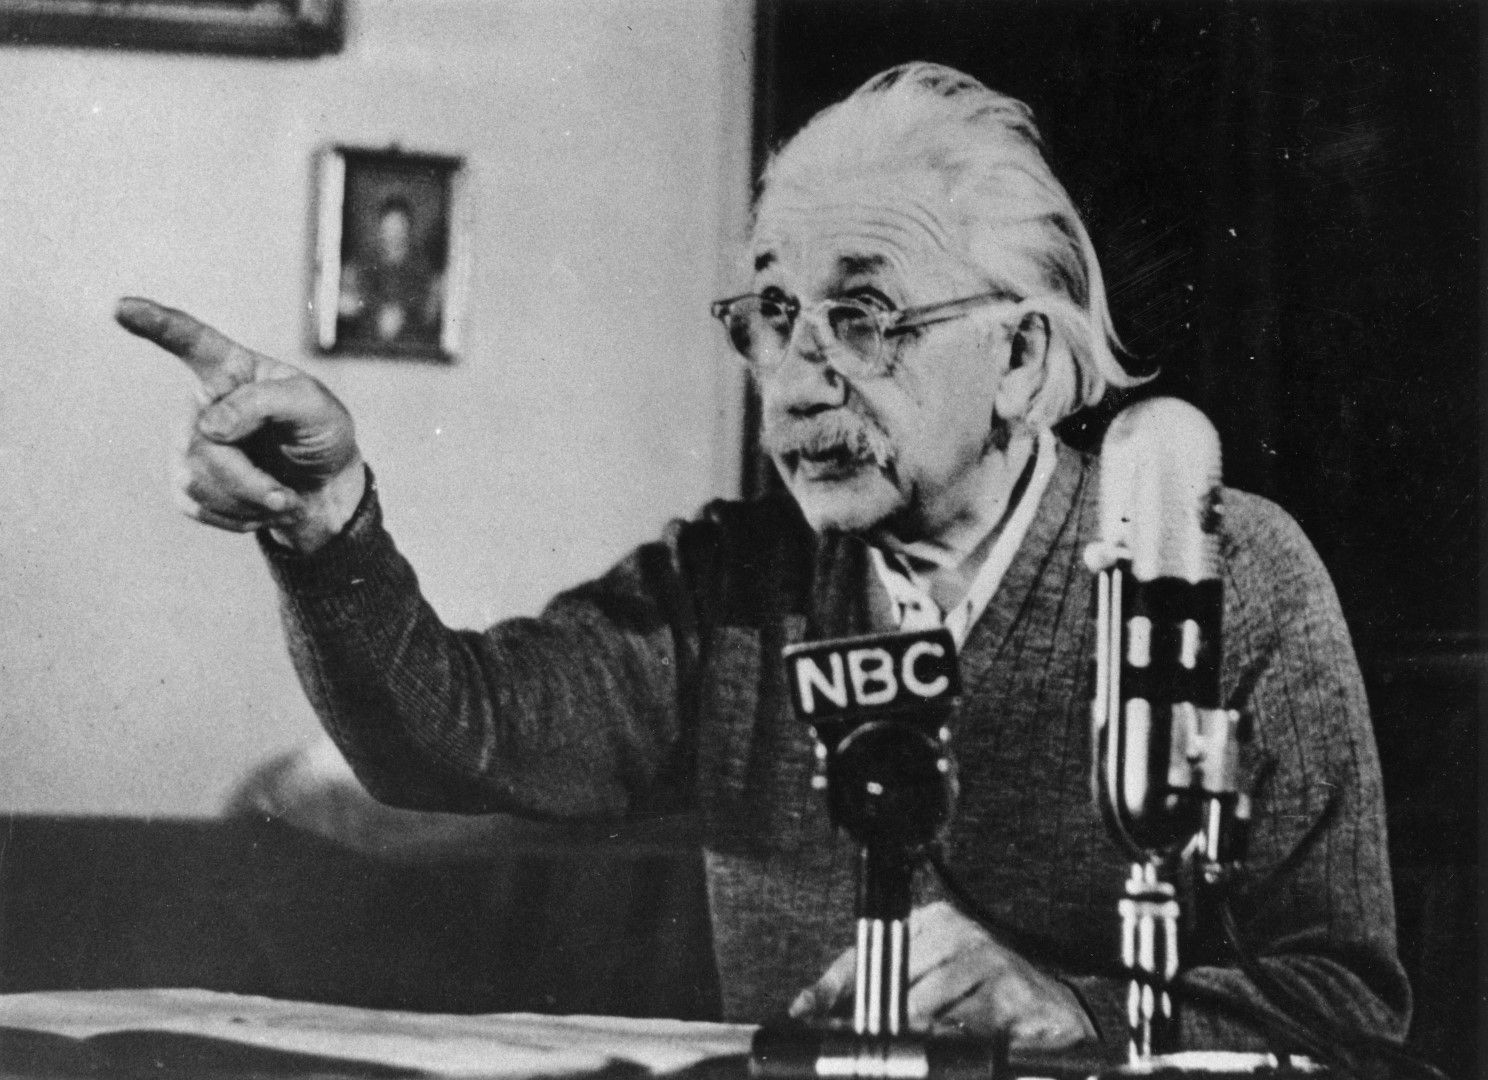  17 февруари 1950 година Алберт Айнщайн приказва обществено в седмичното предаване на Елинор Рузвелт по NBC и предизвестява за 